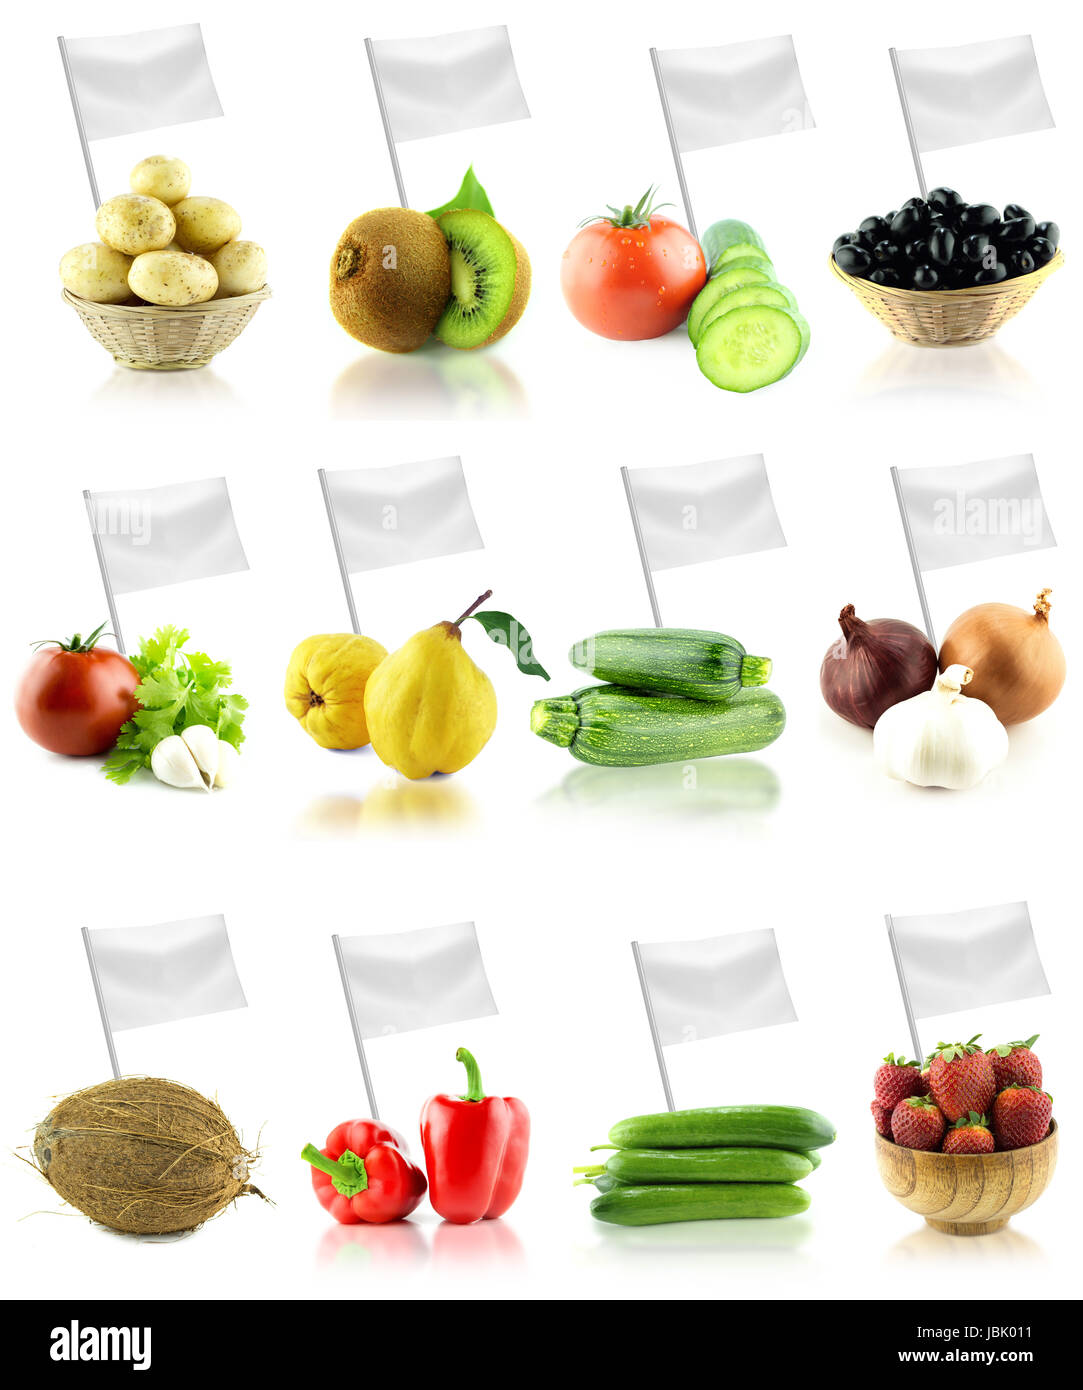 Gesund und Bio-Lebensmittel-Konzept. Satz von frischem Obst und Gemüse mit Flagge zeigt den nutzen oder den Preis der Früchte. Stockfoto